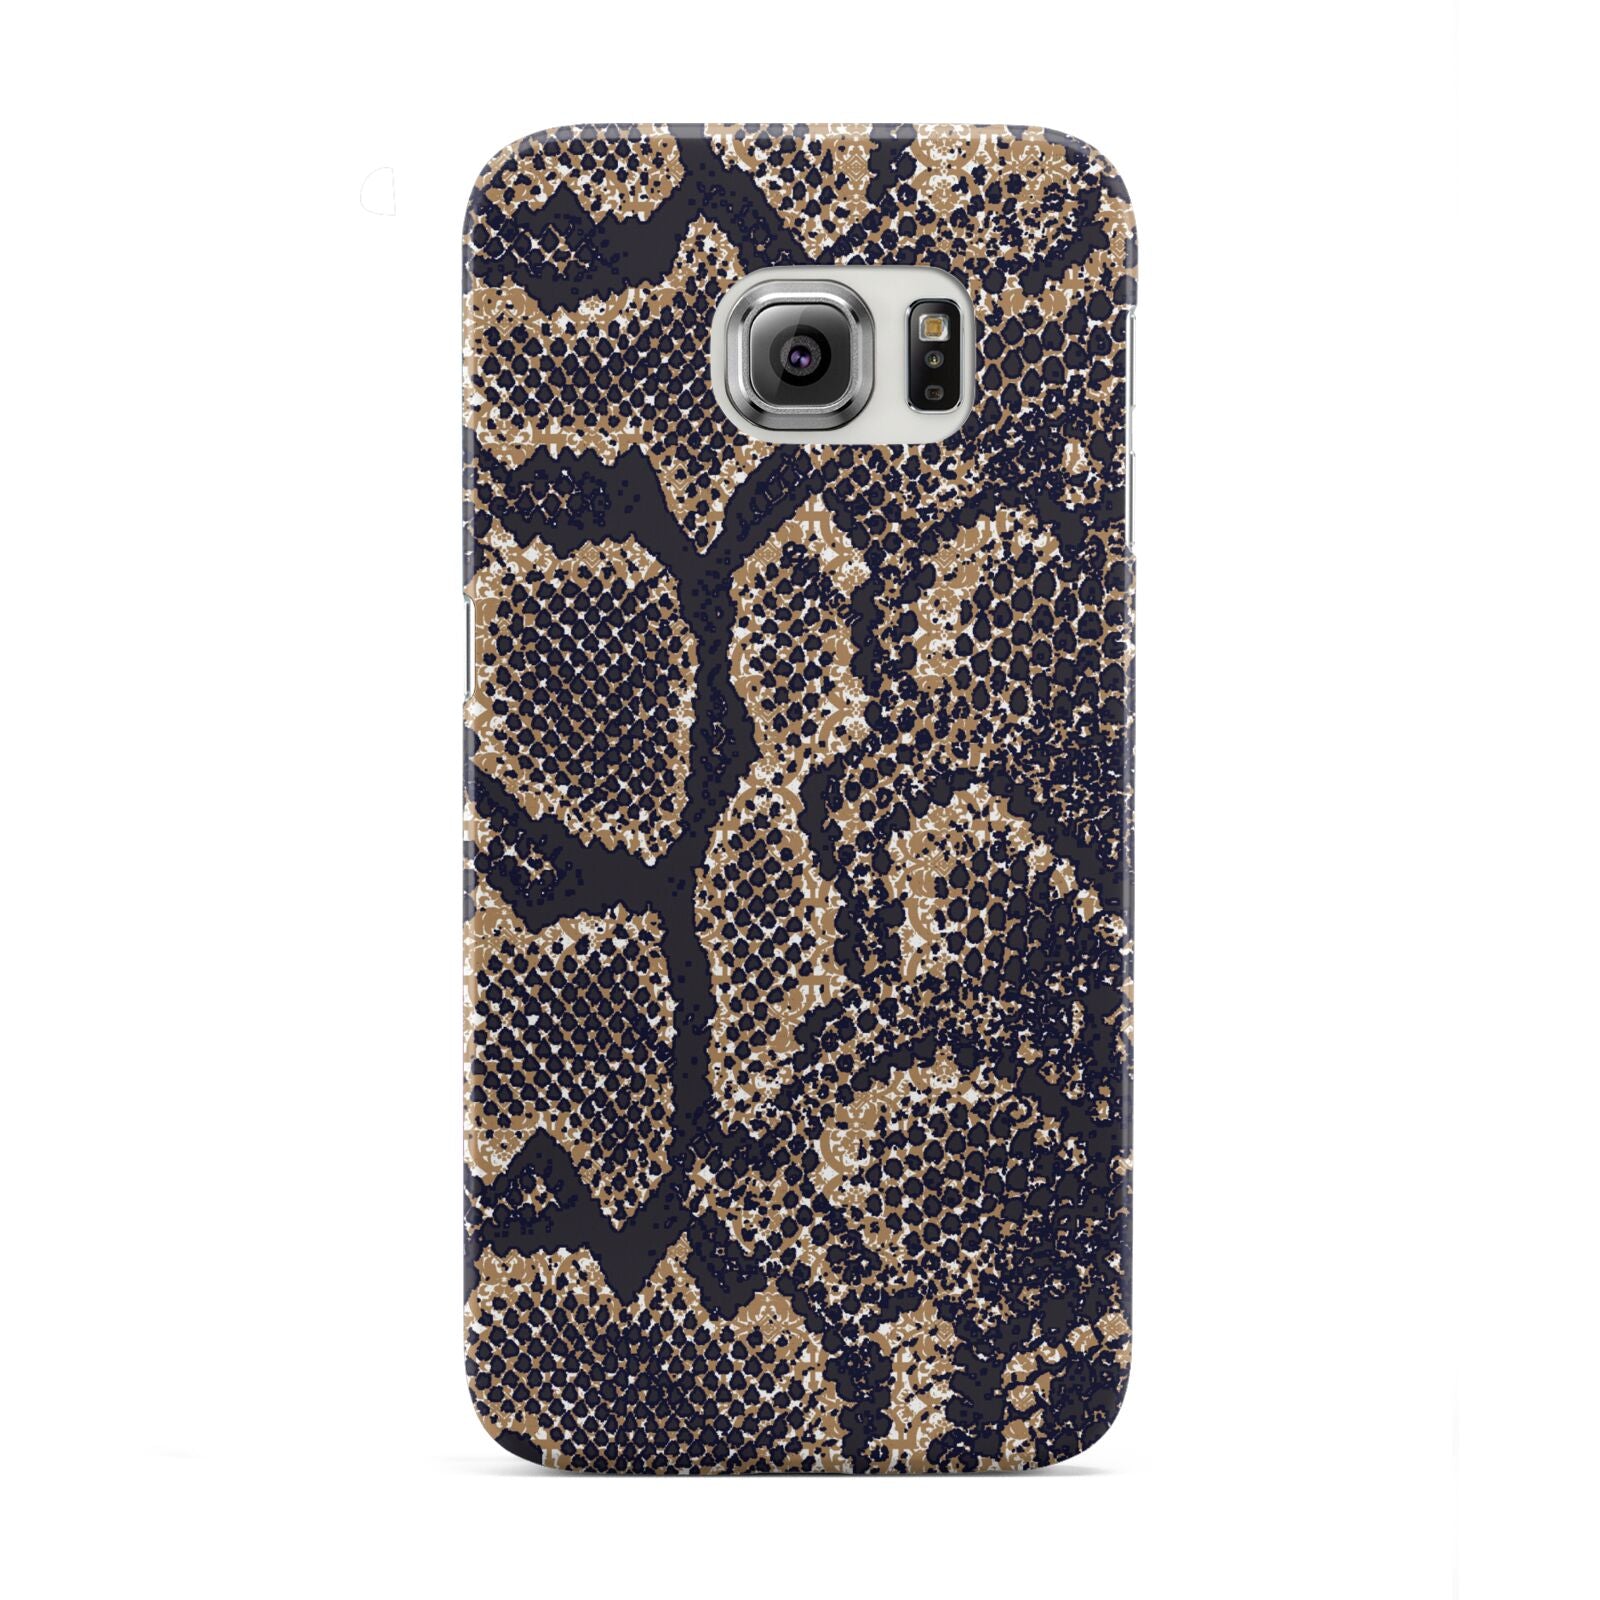 Brown Snakeskin Samsung Galaxy S6 Edge Case